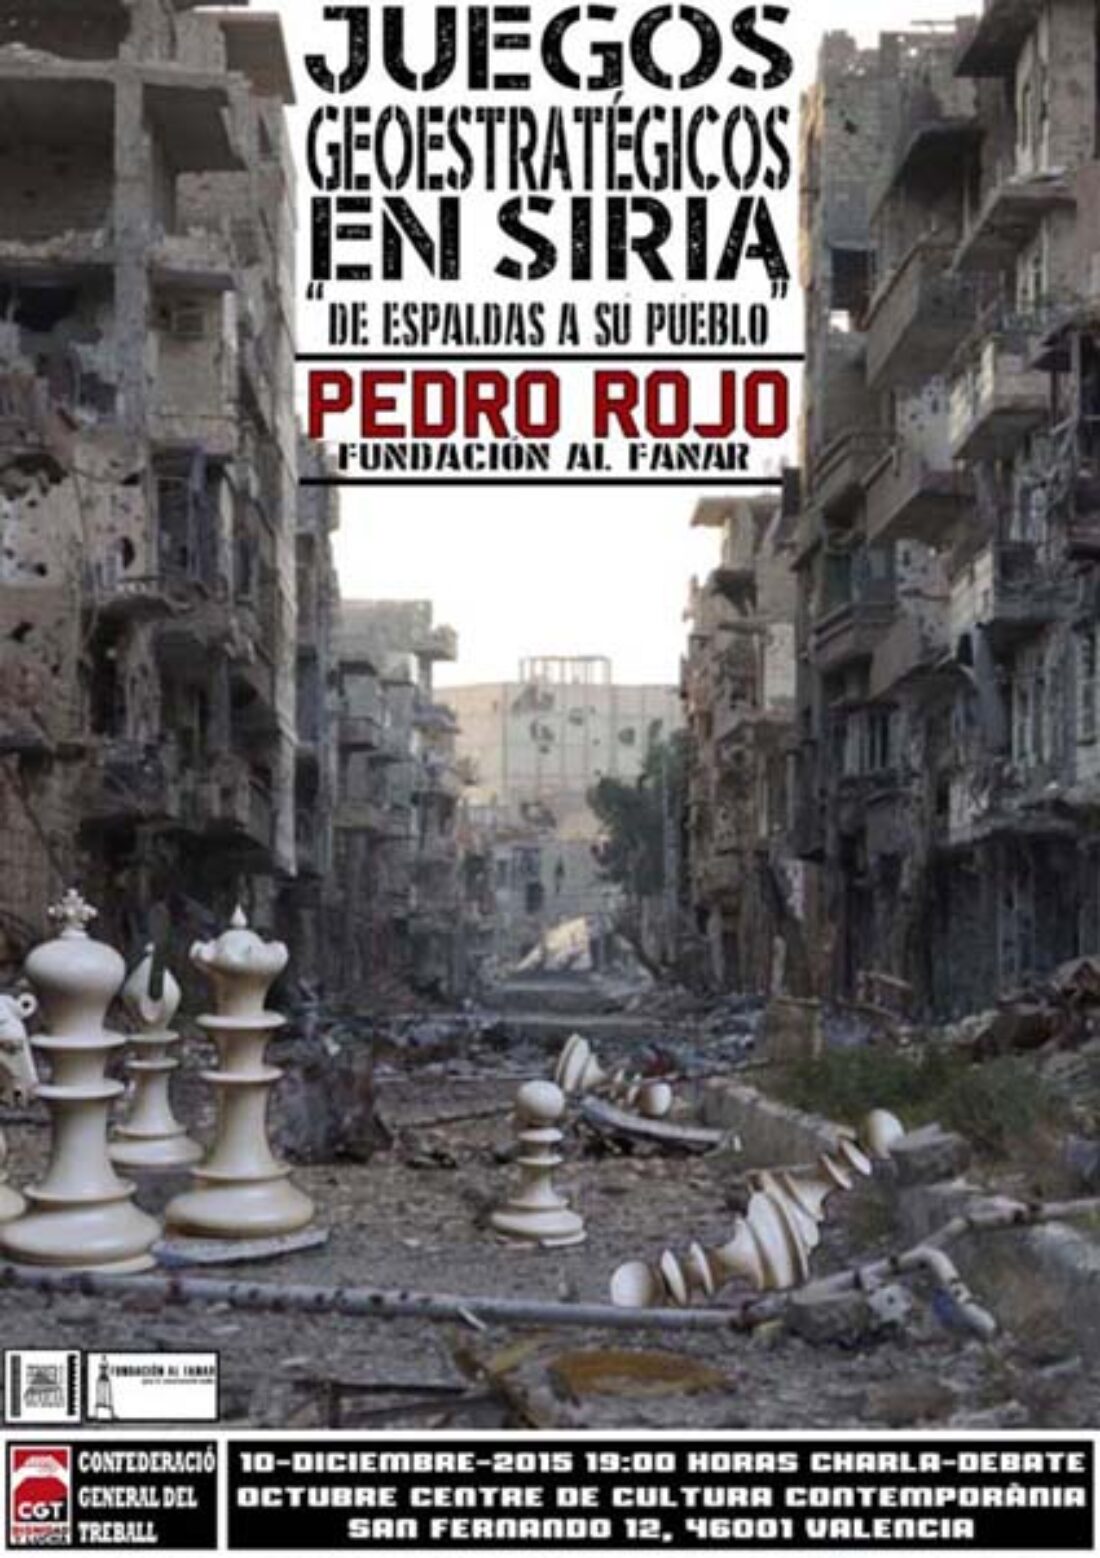 10-d Valencia: Charla-Debate “Juegos geoestratégicos en Siria”